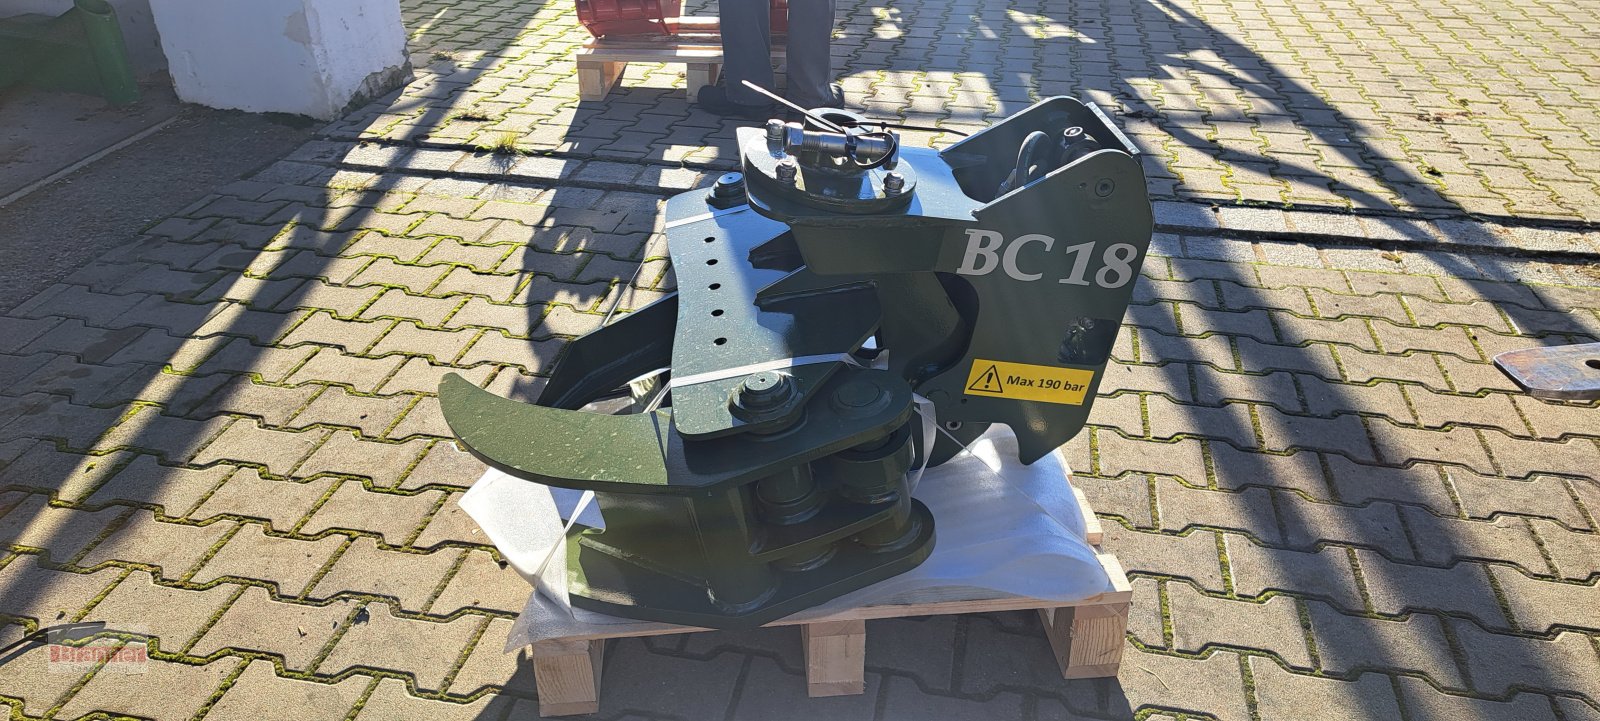 Forstgreifer und Zange des Typs Farma BC 18, Neumaschine in Titting (Bild 1)